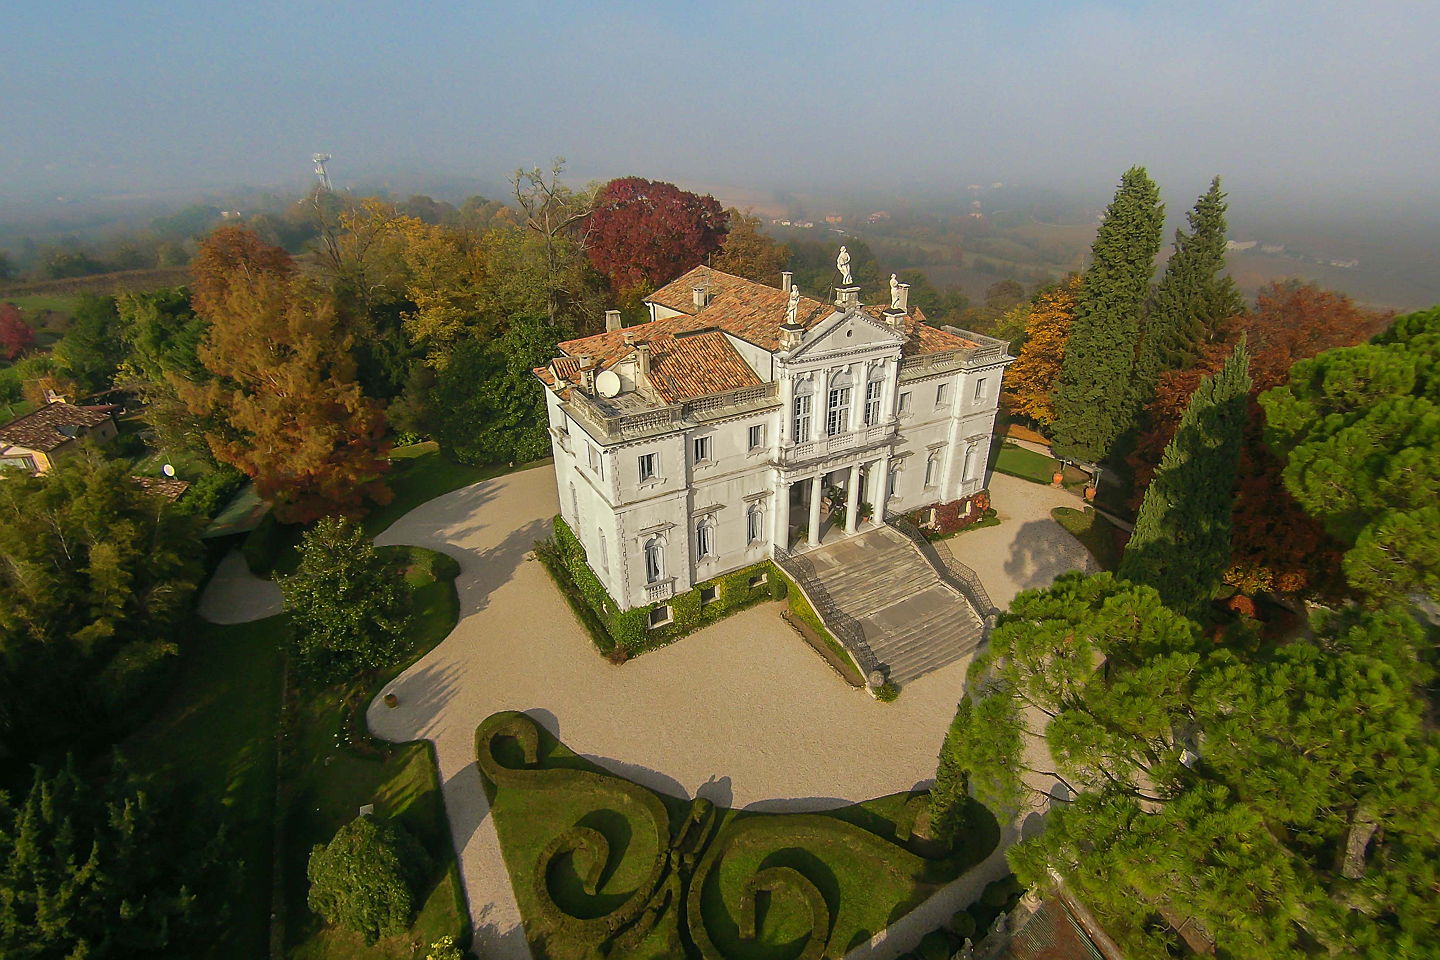  Padova
- Nella provincia di Treviso, nel cuore geografico del
“prosecco” veneto, si trova questa magnifica Villa, dalla storicità,
dal fascino e dal prestigio unico,